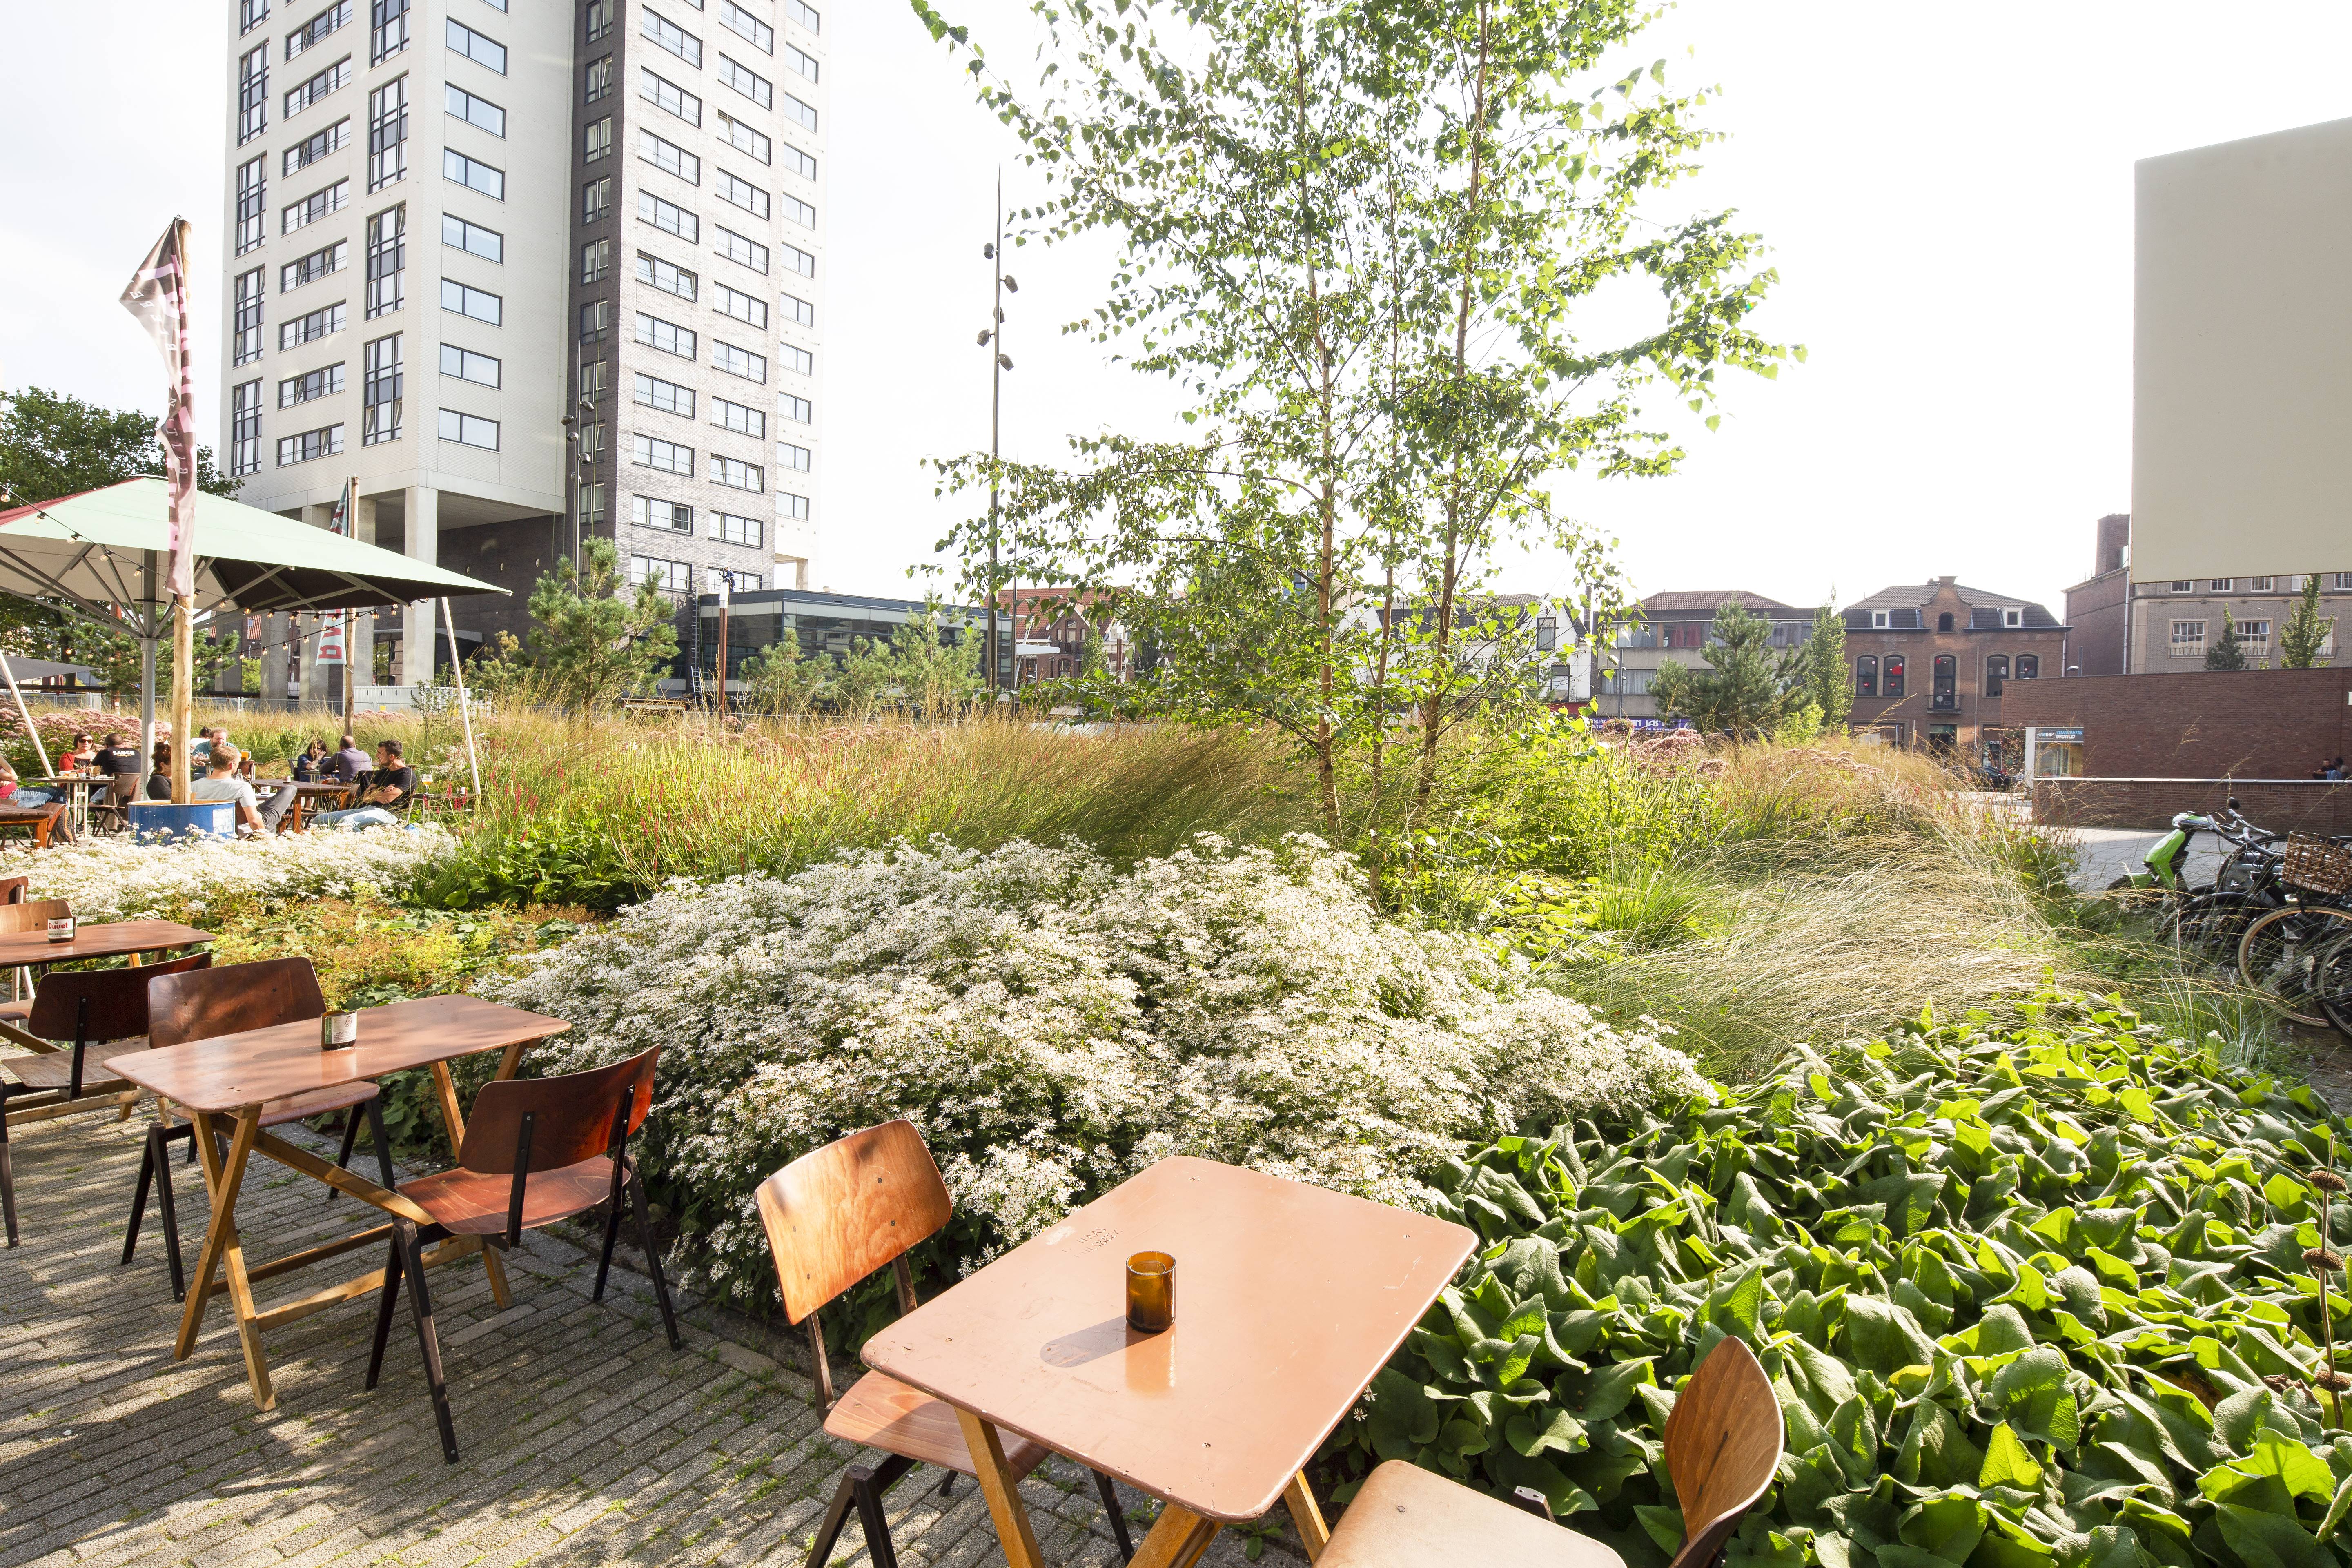 Project Clausplein - Van een vrijwel volledig versteend plein naar een groene, duurzame plek waar je wil verblijven